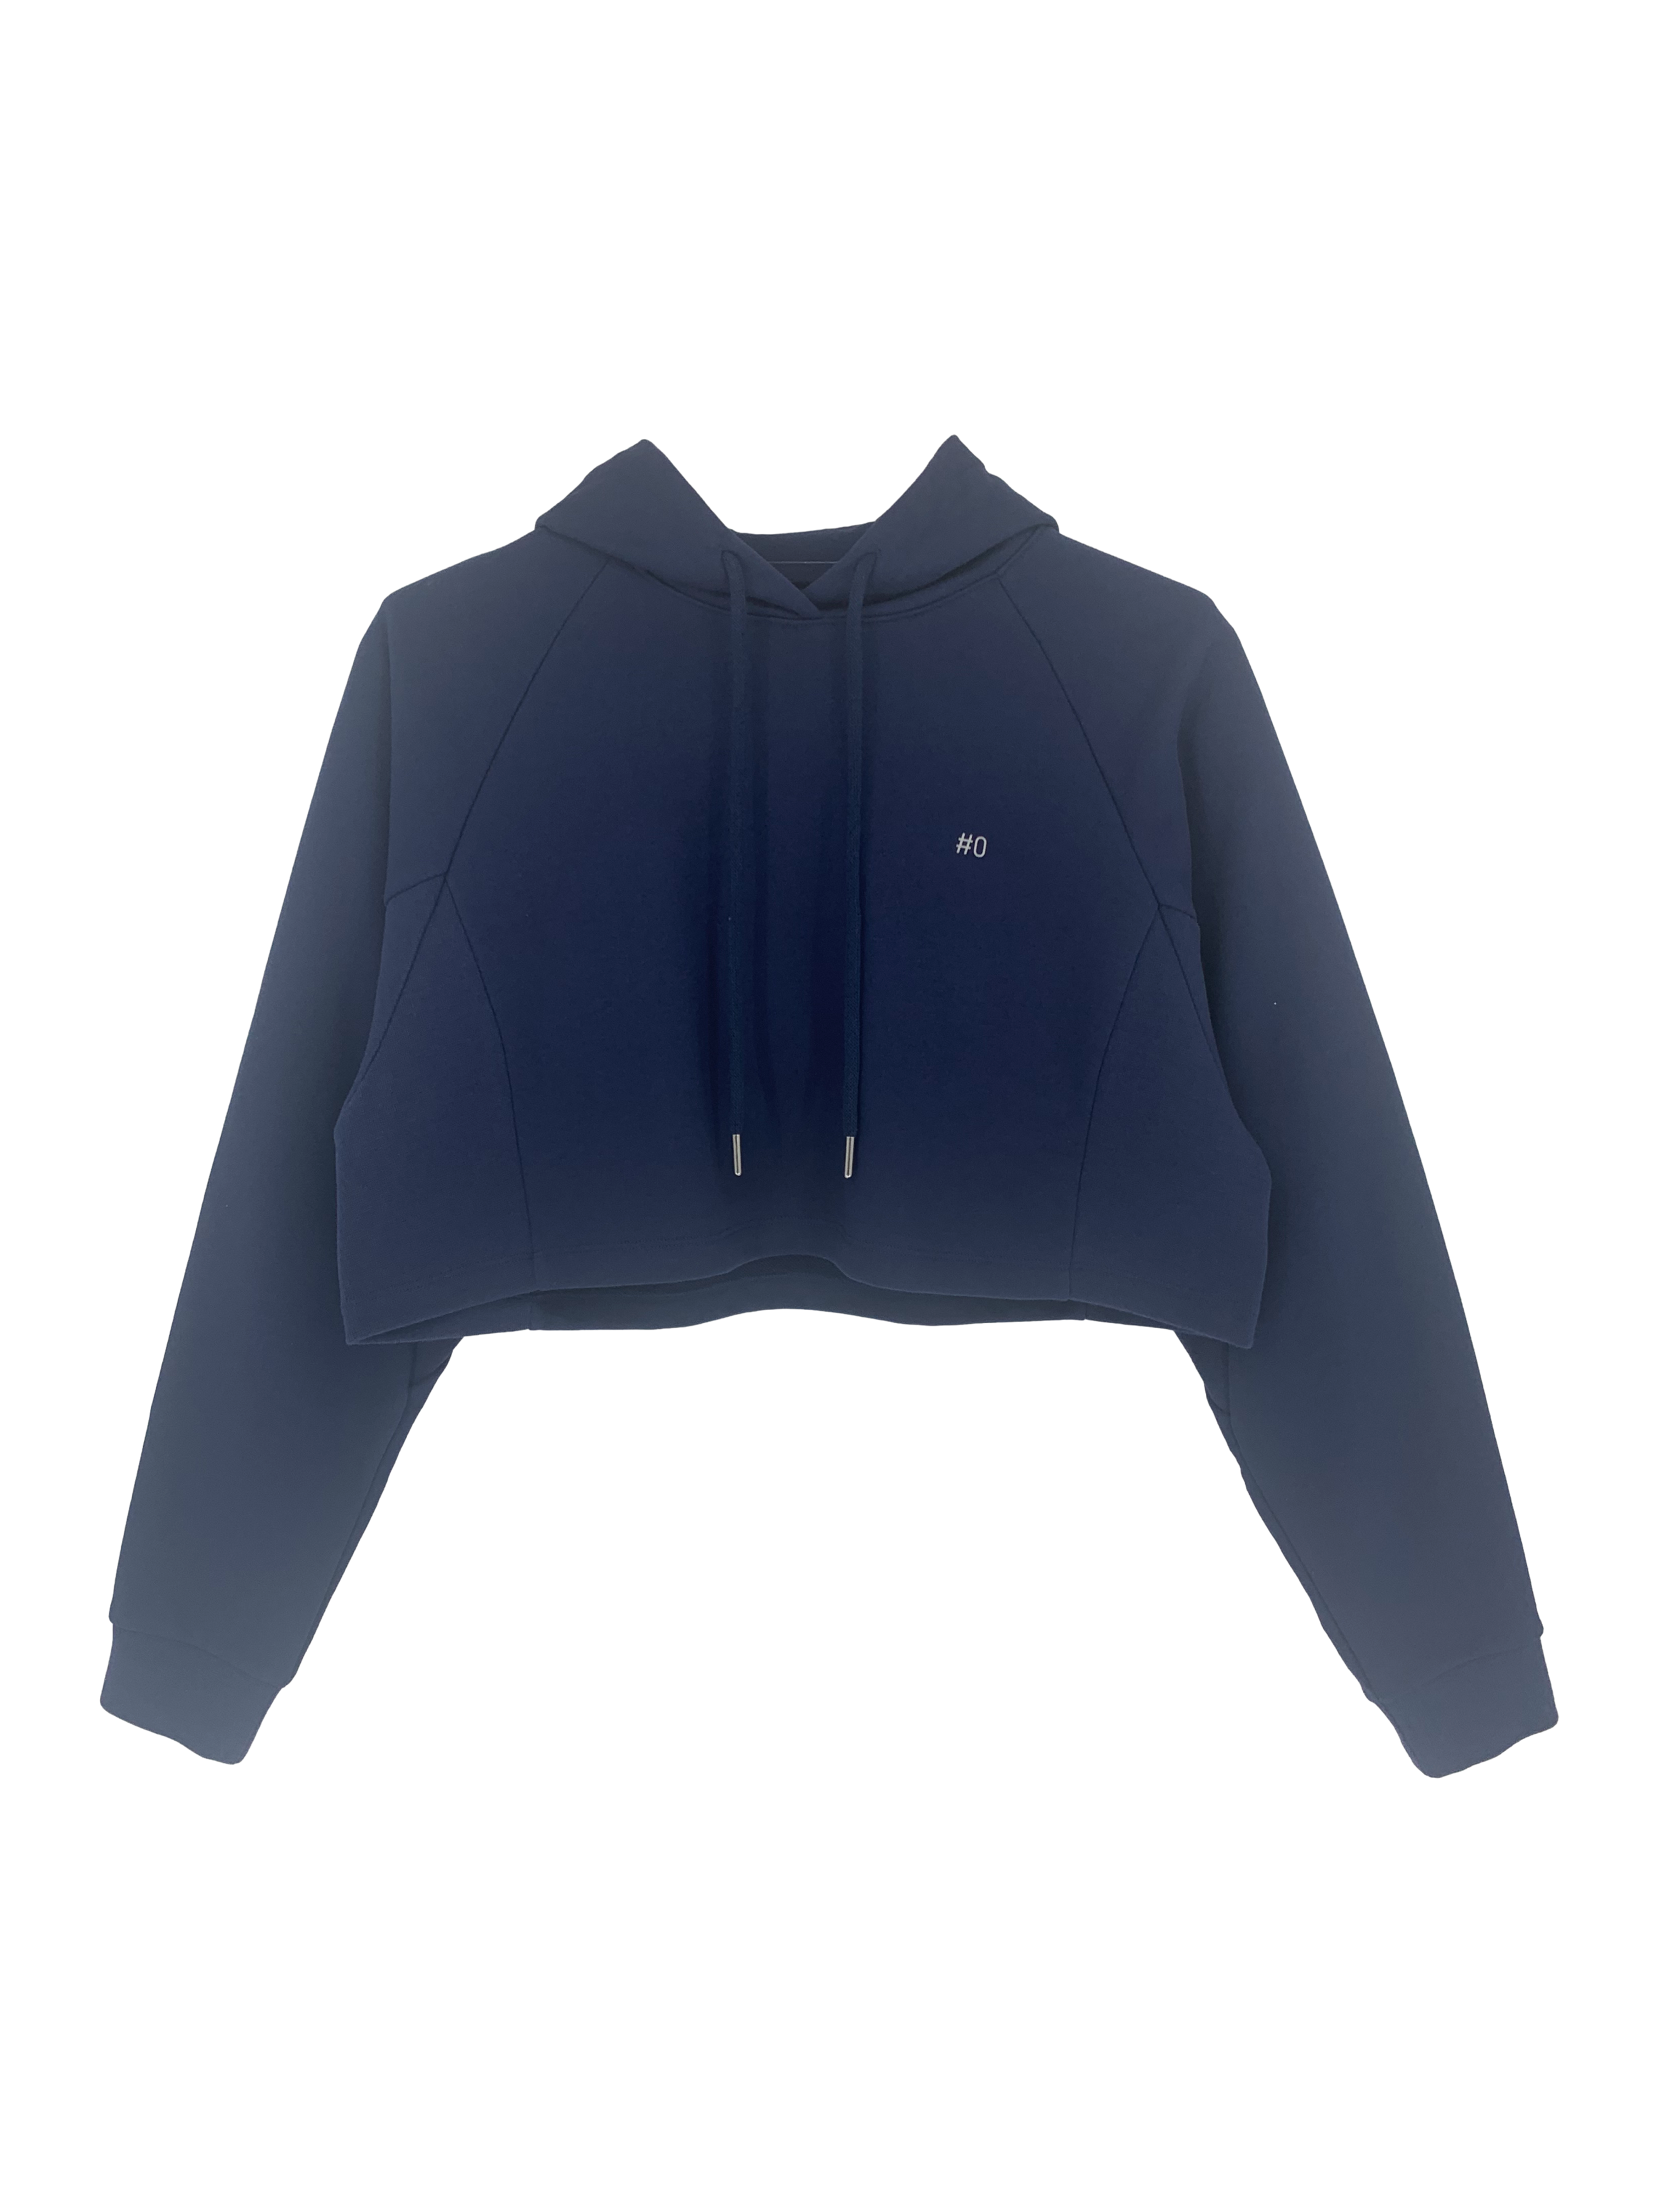 Hoodie Sweater #131 - Navy blue